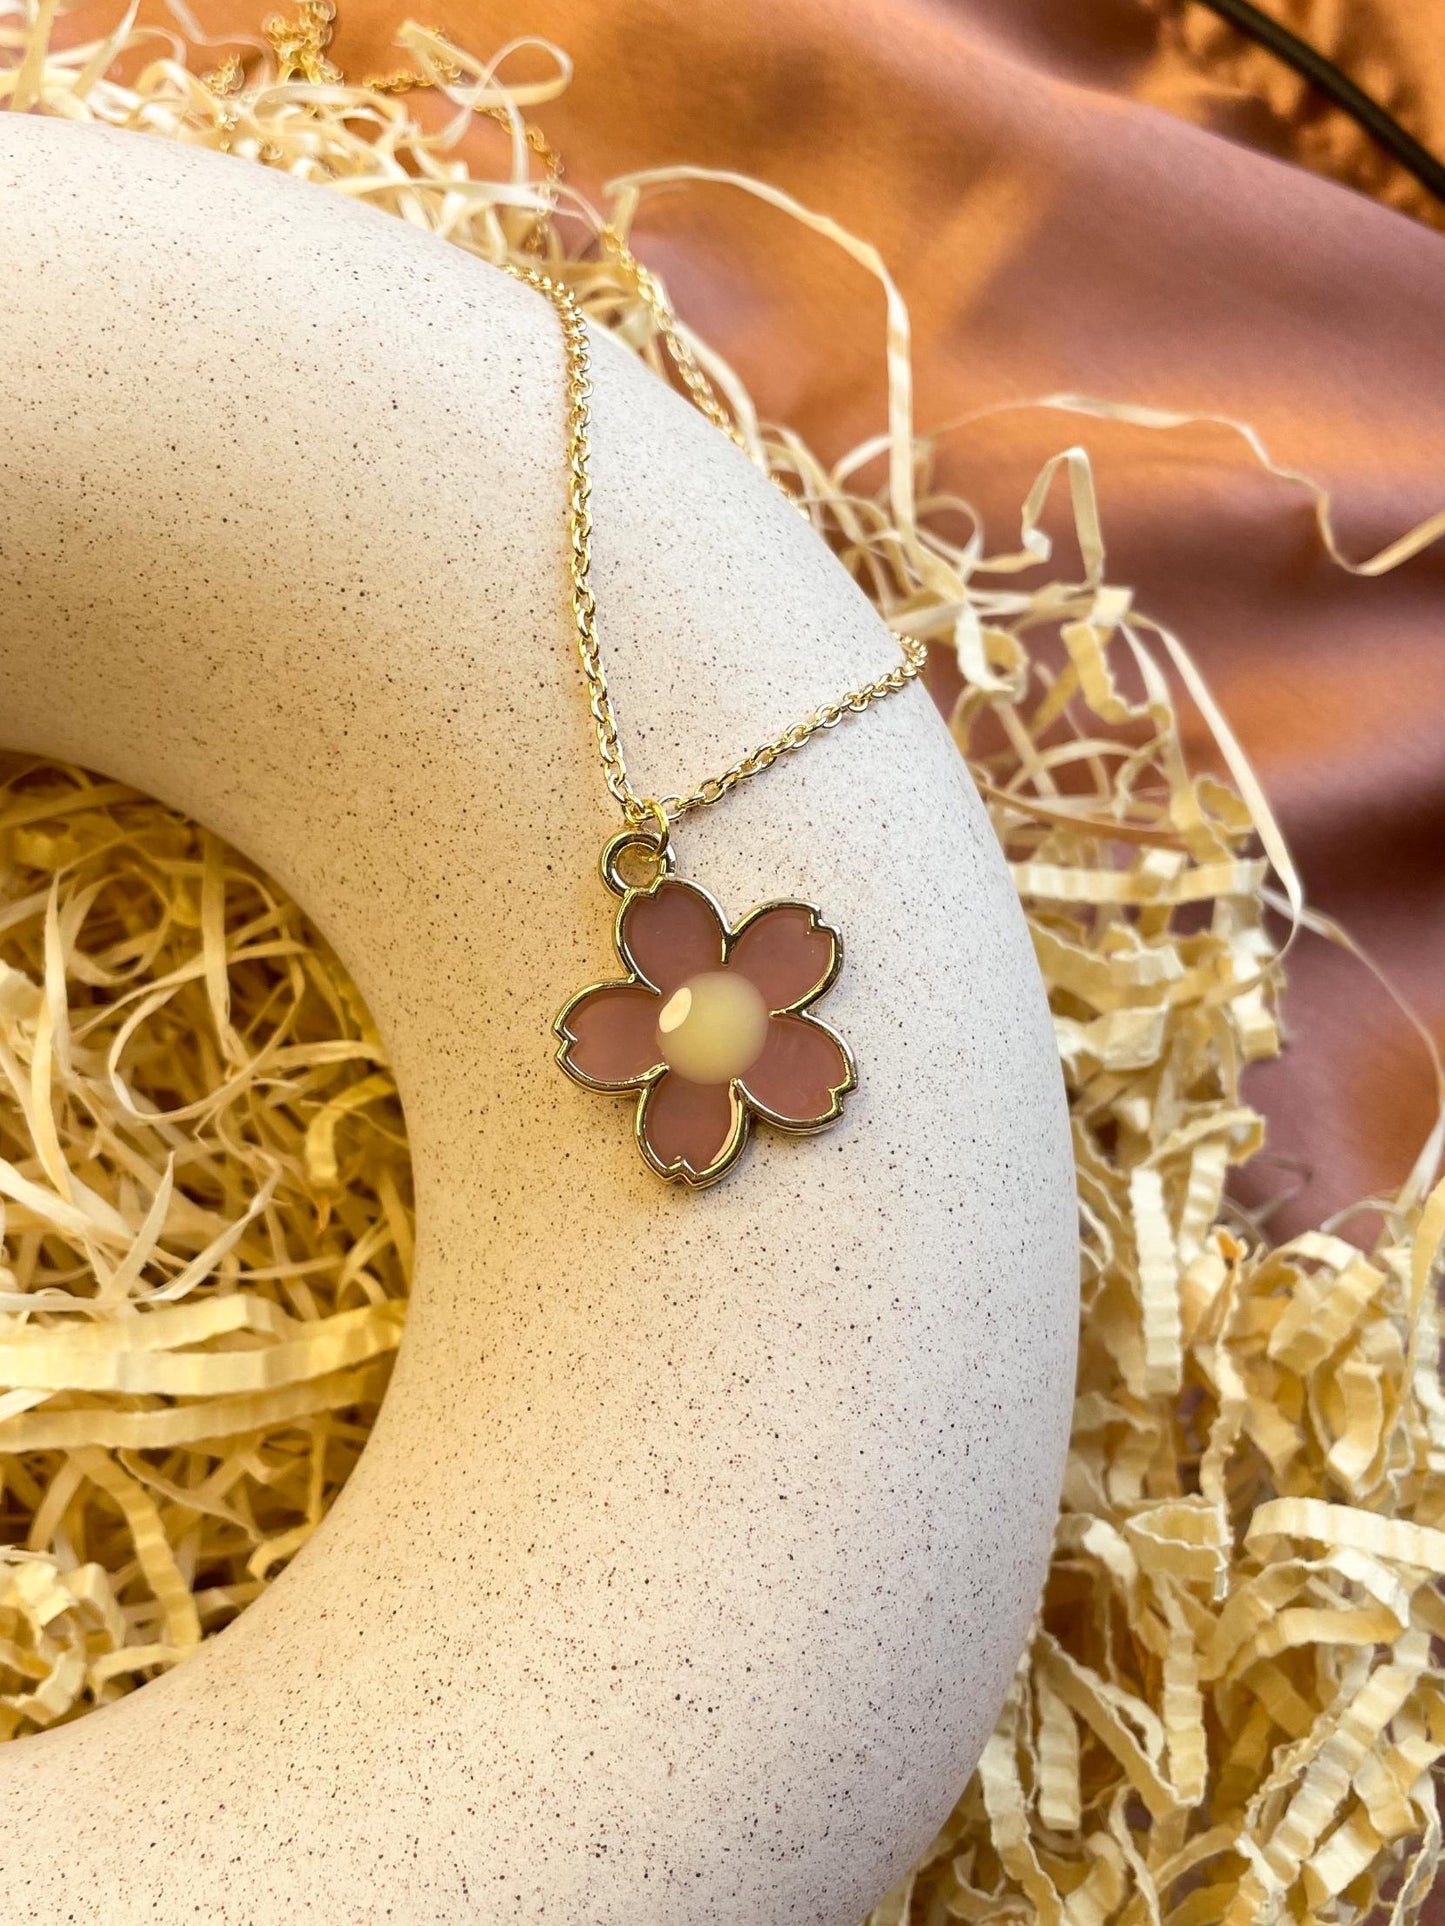 Glossy Flower Enamel Golden Necklace: Purple